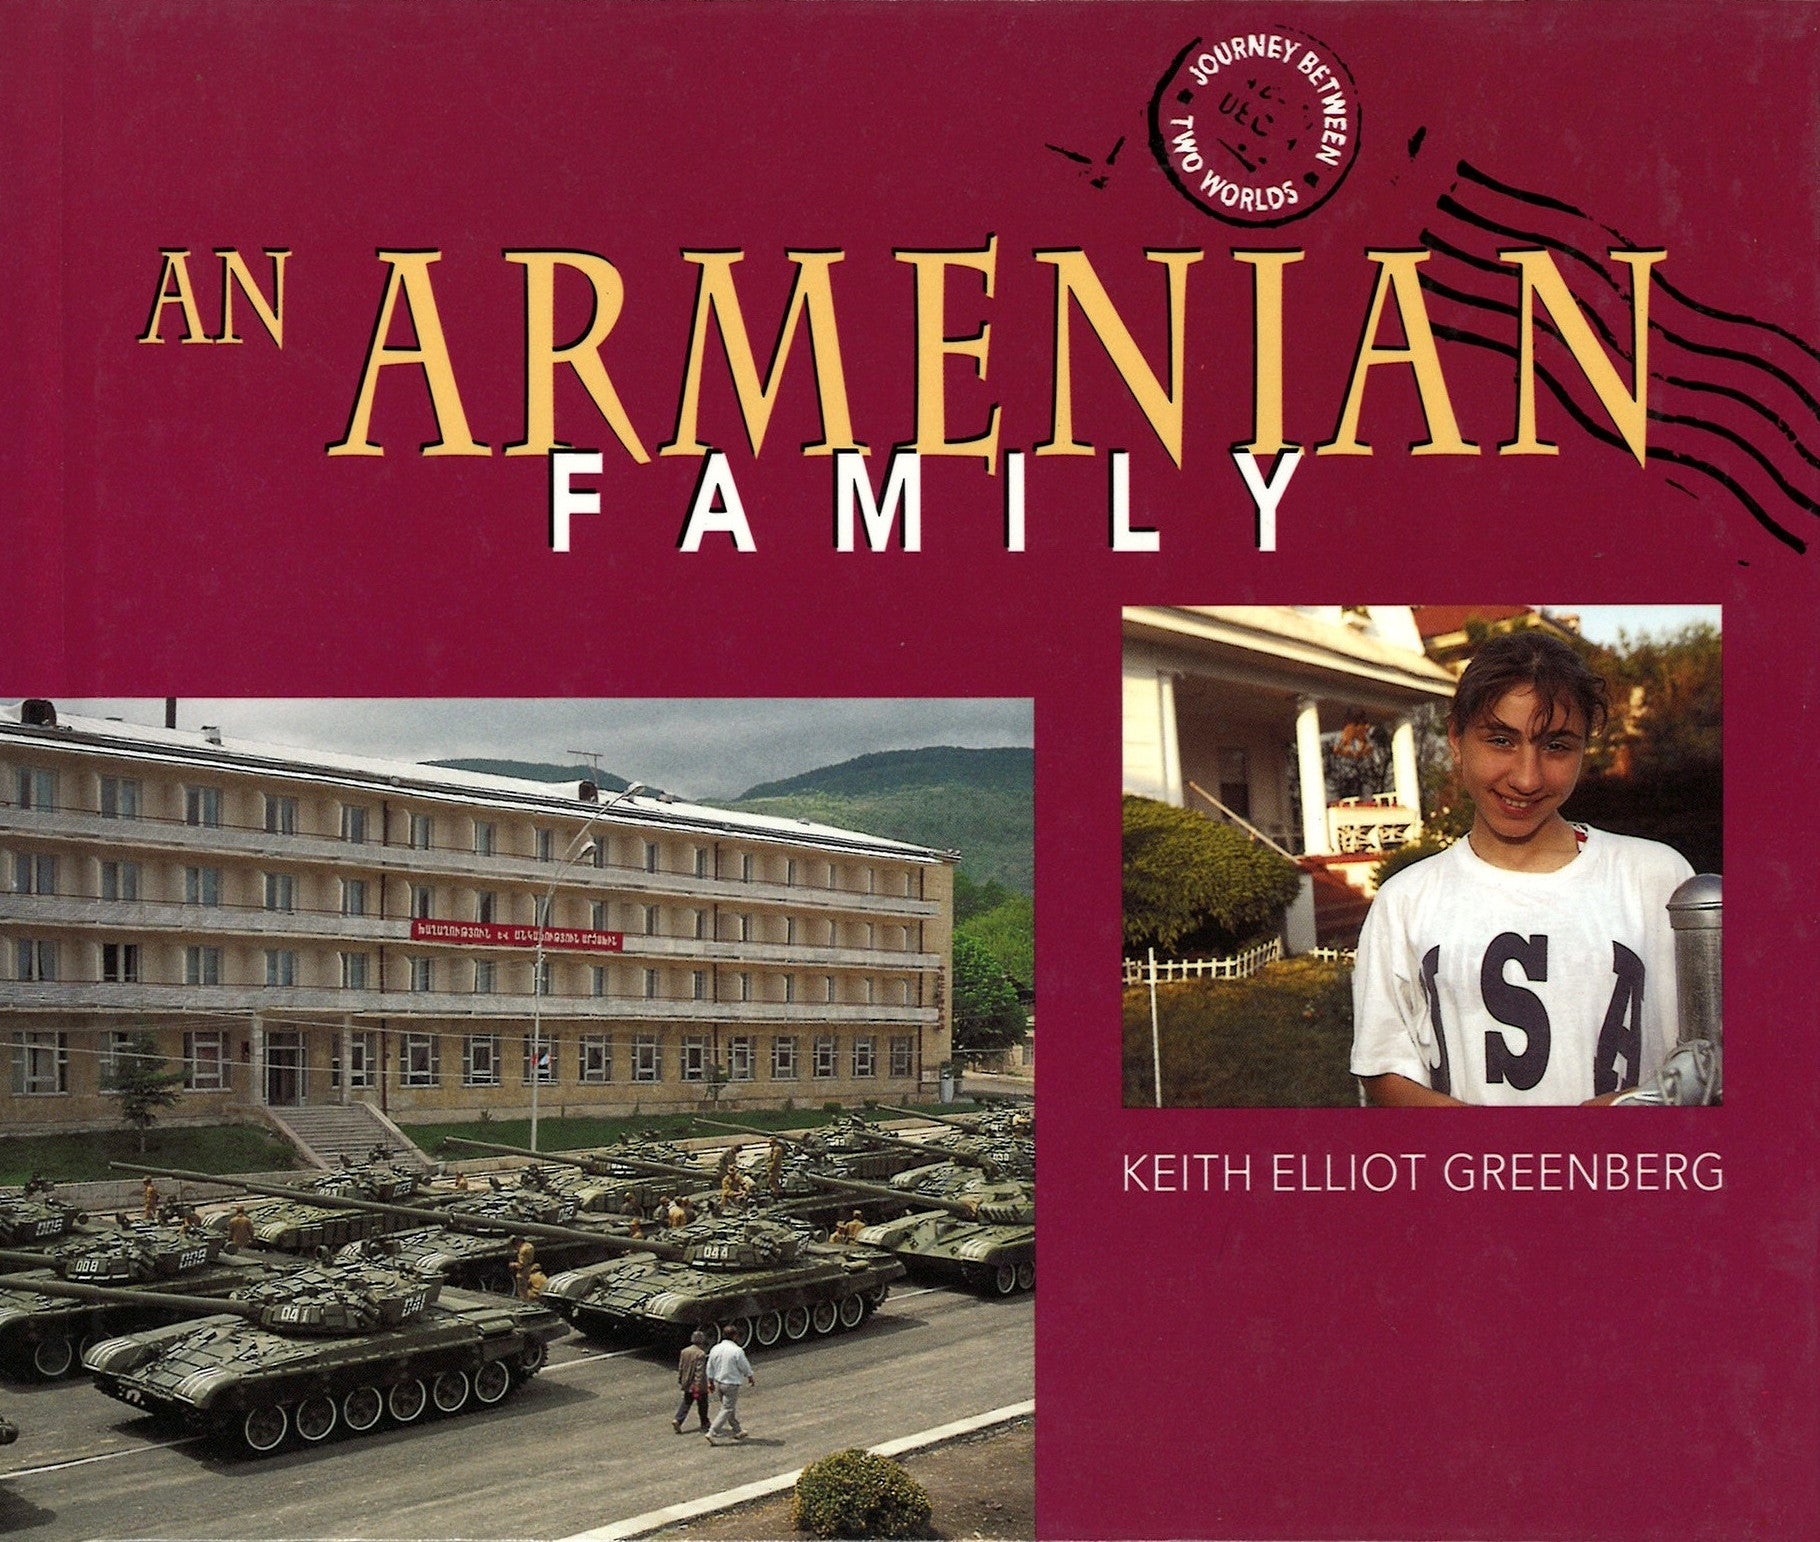 AN ARMENIAN FAMILY